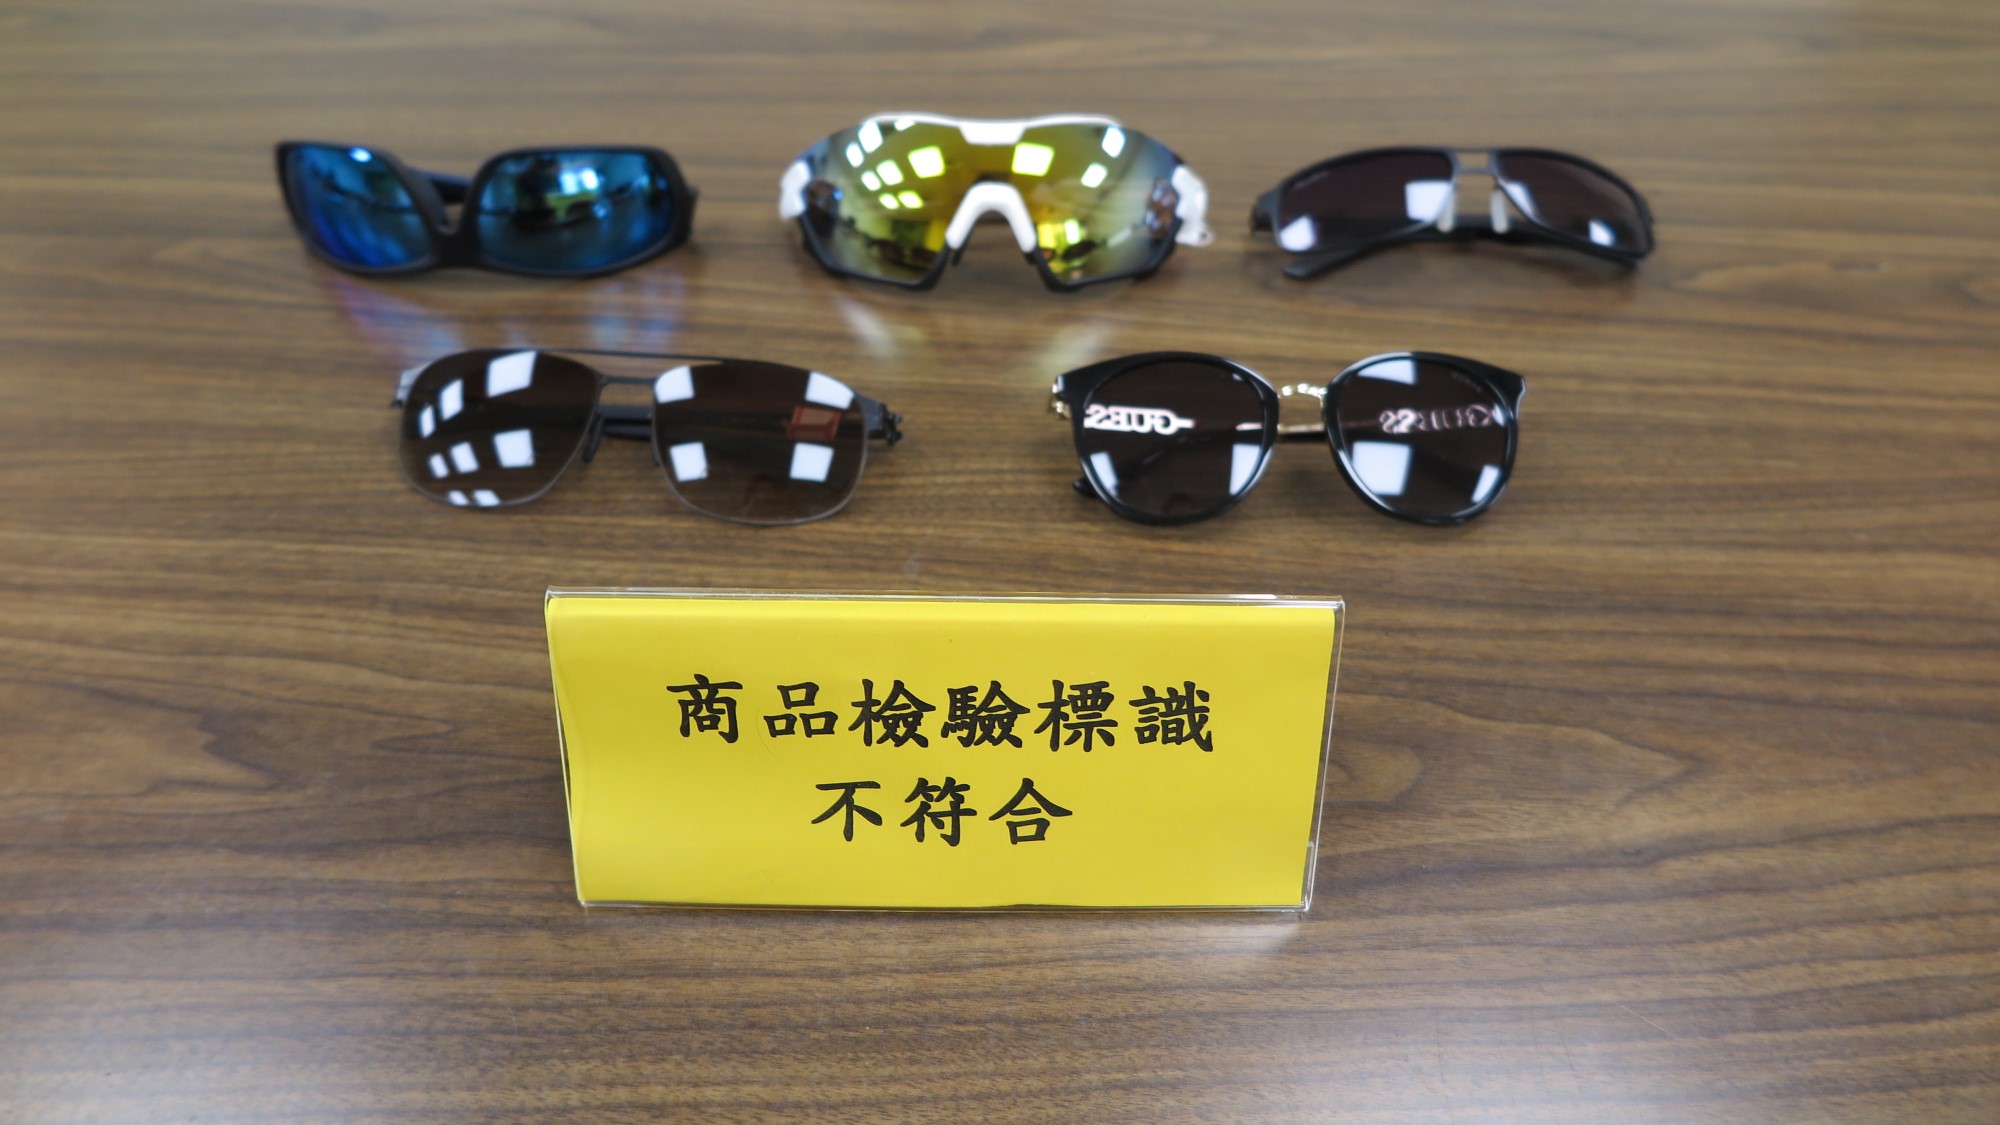 行政院消費者保護處與經濟部標準檢驗局共同公布市售「太陽眼鏡」檢測結果